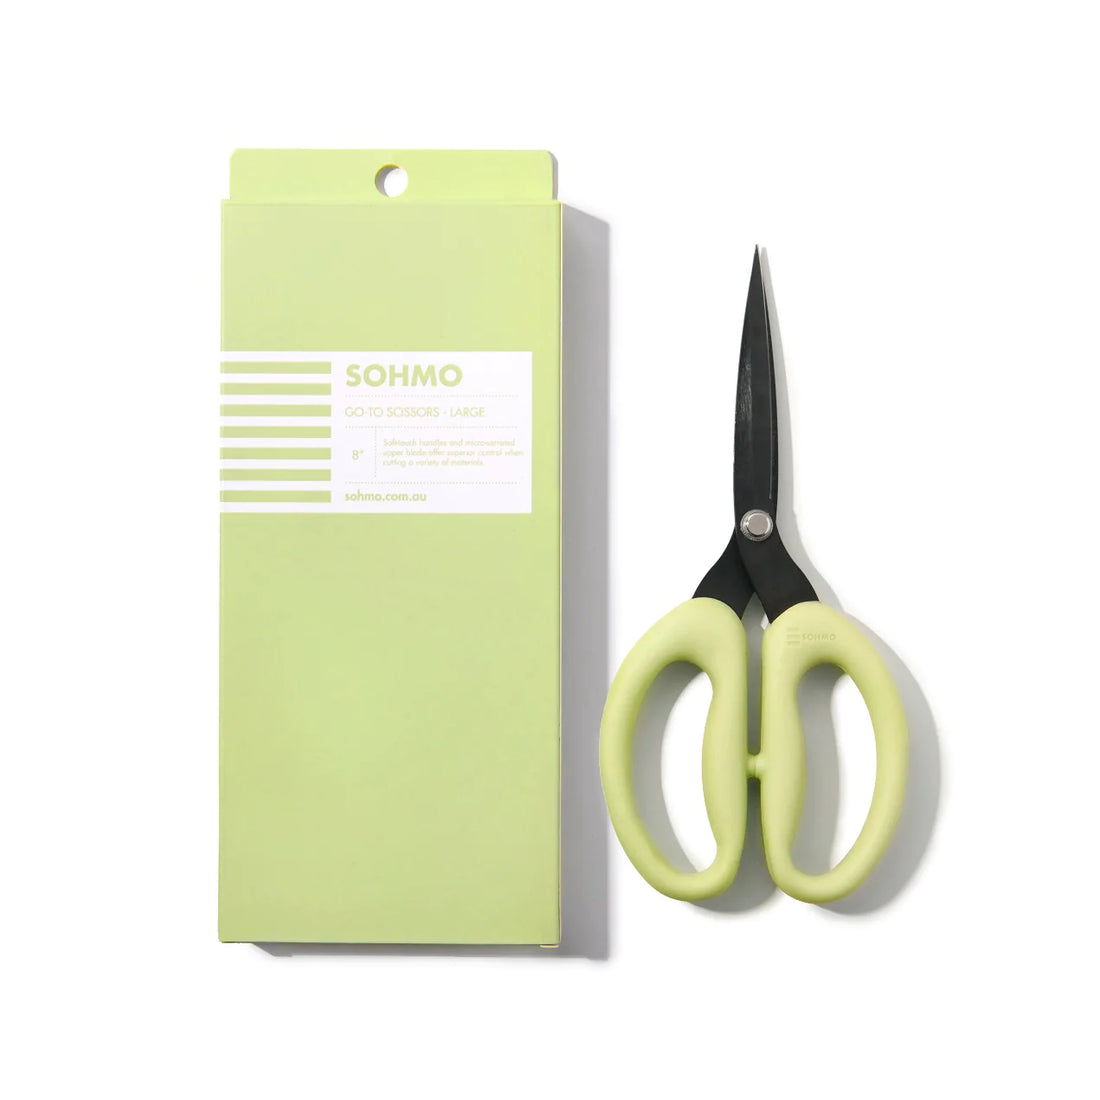 SOHMO Go-To Scissors - Large 8&quot;